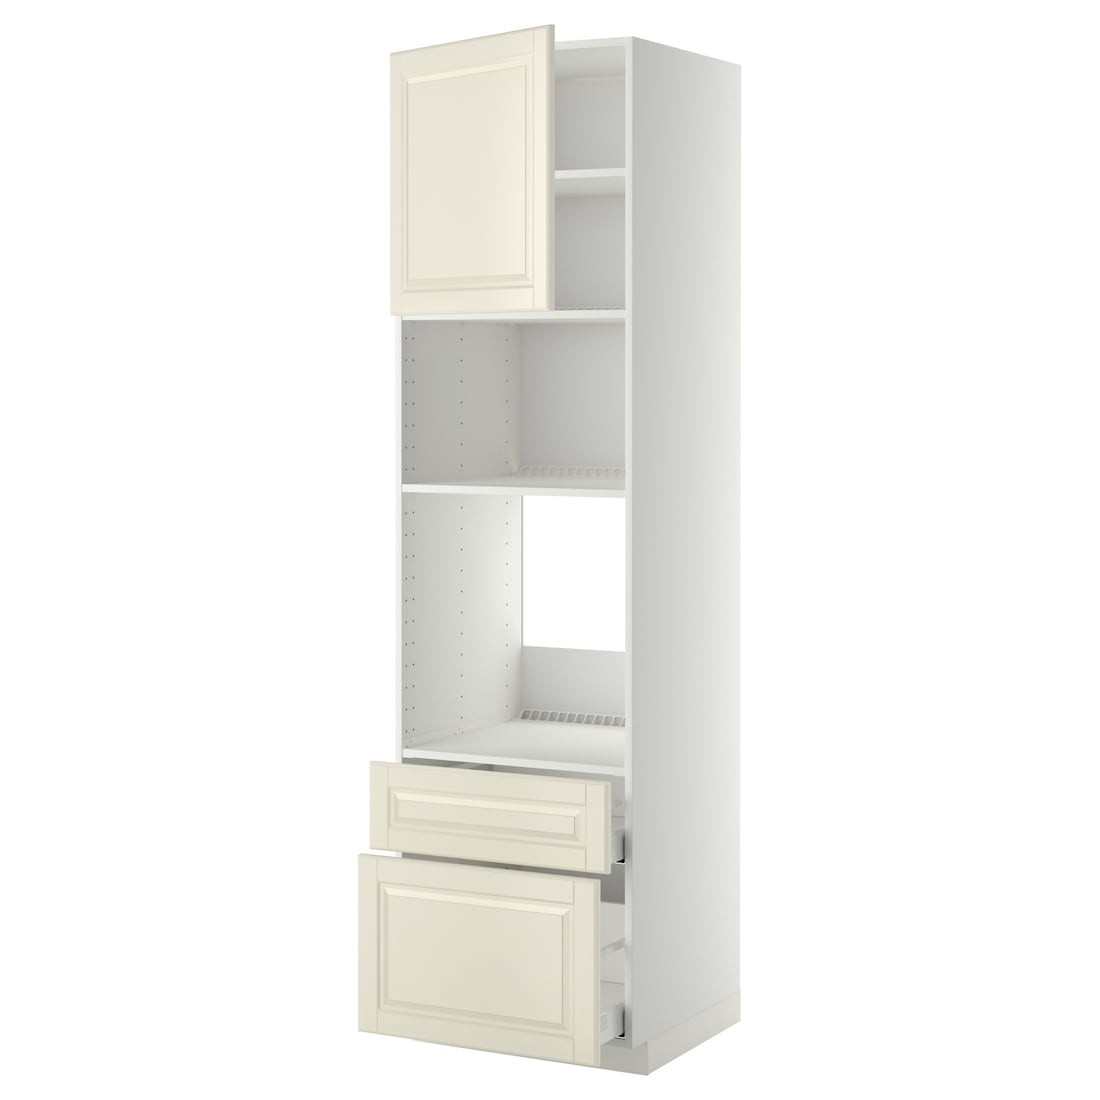 IKEA METOD МЕТОД / MAXIMERA МАКСИМЕРА Высокий шкаф для духовки / микроволновки с дверями / 2 ящиками, белый / Bodbyn кремовый, 60x60x220 см 69460481 694.604.81